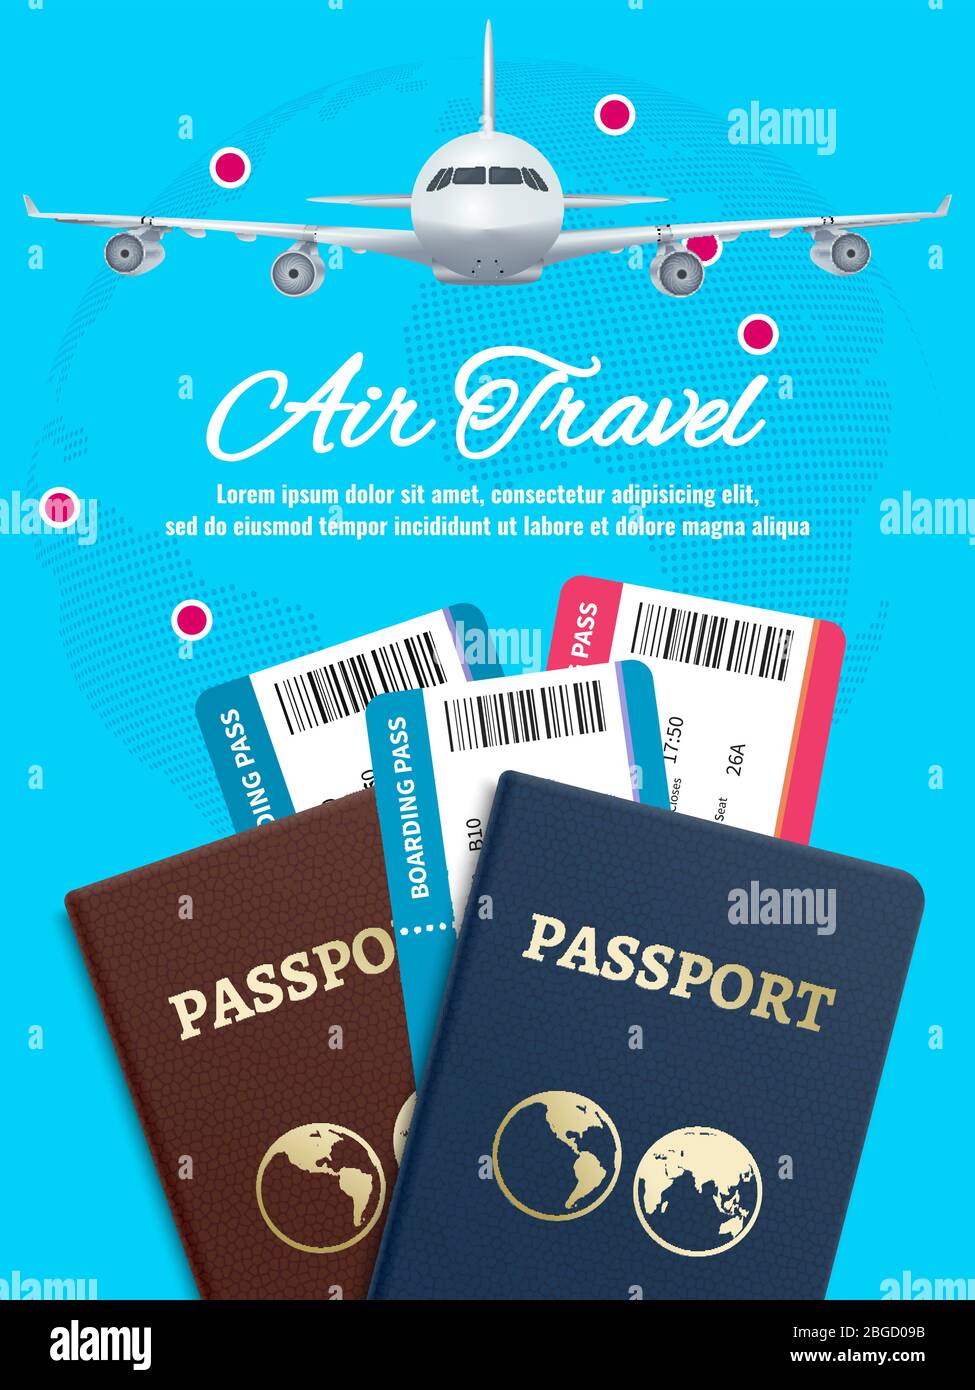 Bannière de voyage aérien avec passeport et billets d'avion terrestre. Voyage en avion, billet d'avion et passeport. Illustration vectorielle Illustration de Vecteur